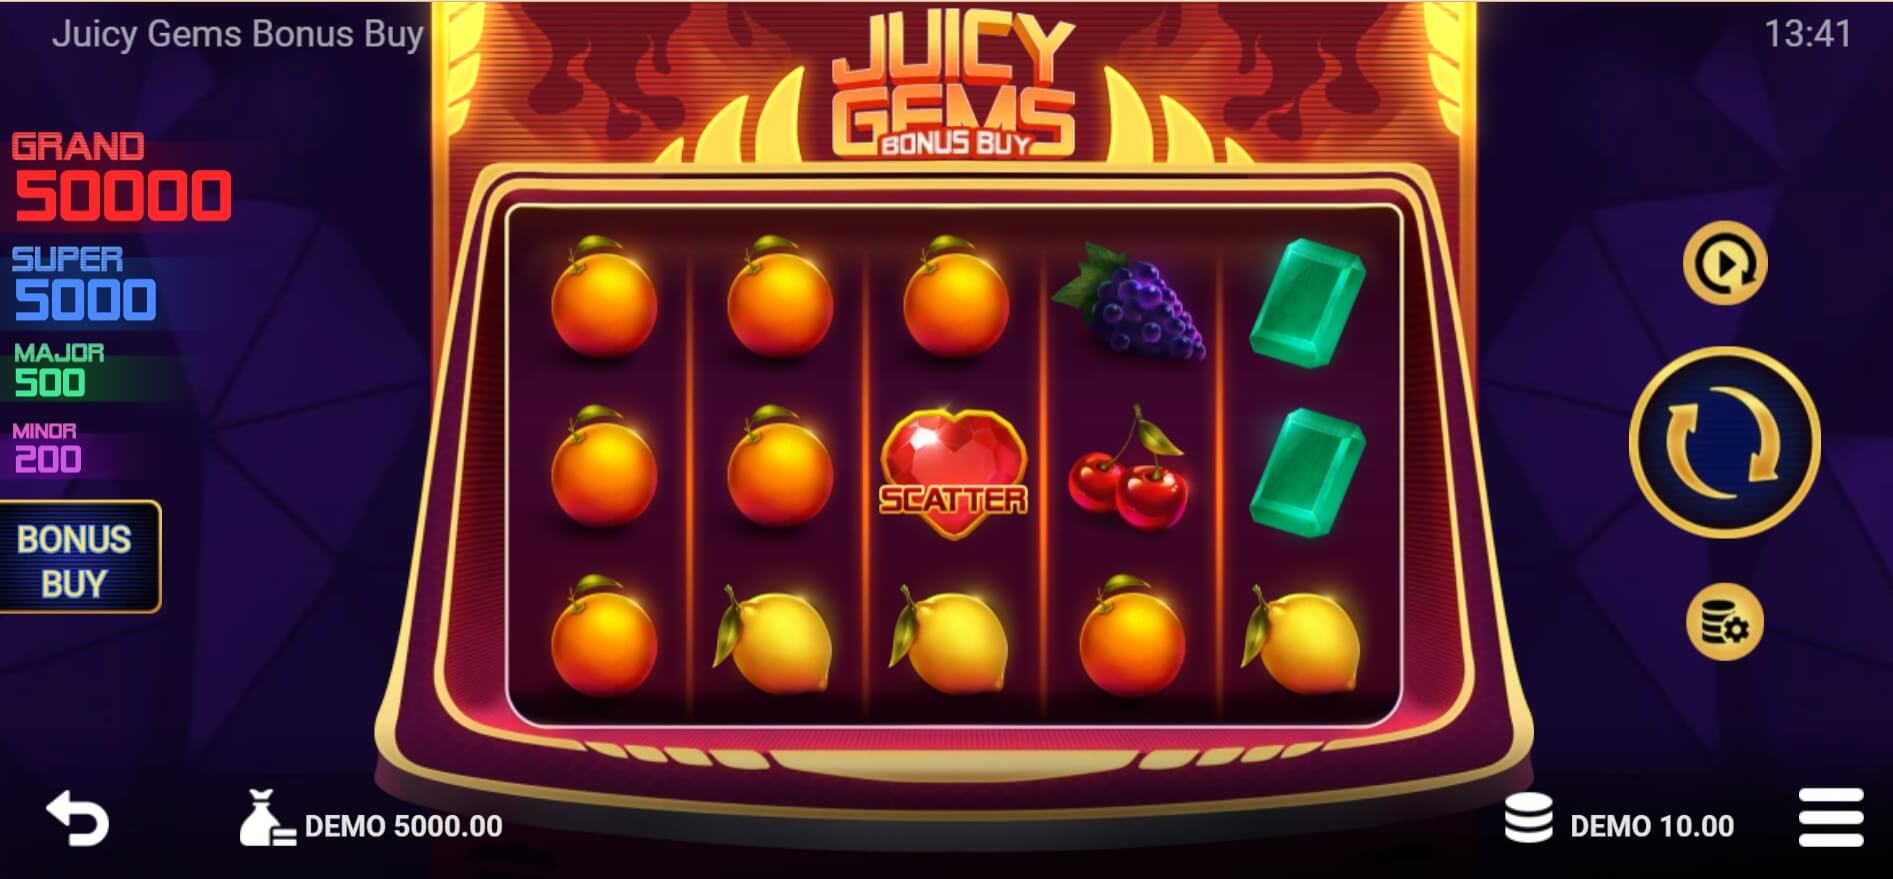 Juicy Gems Bonus Buy Evo Play ซุปเปอร์สล็อต ใหม่ล่าสุด